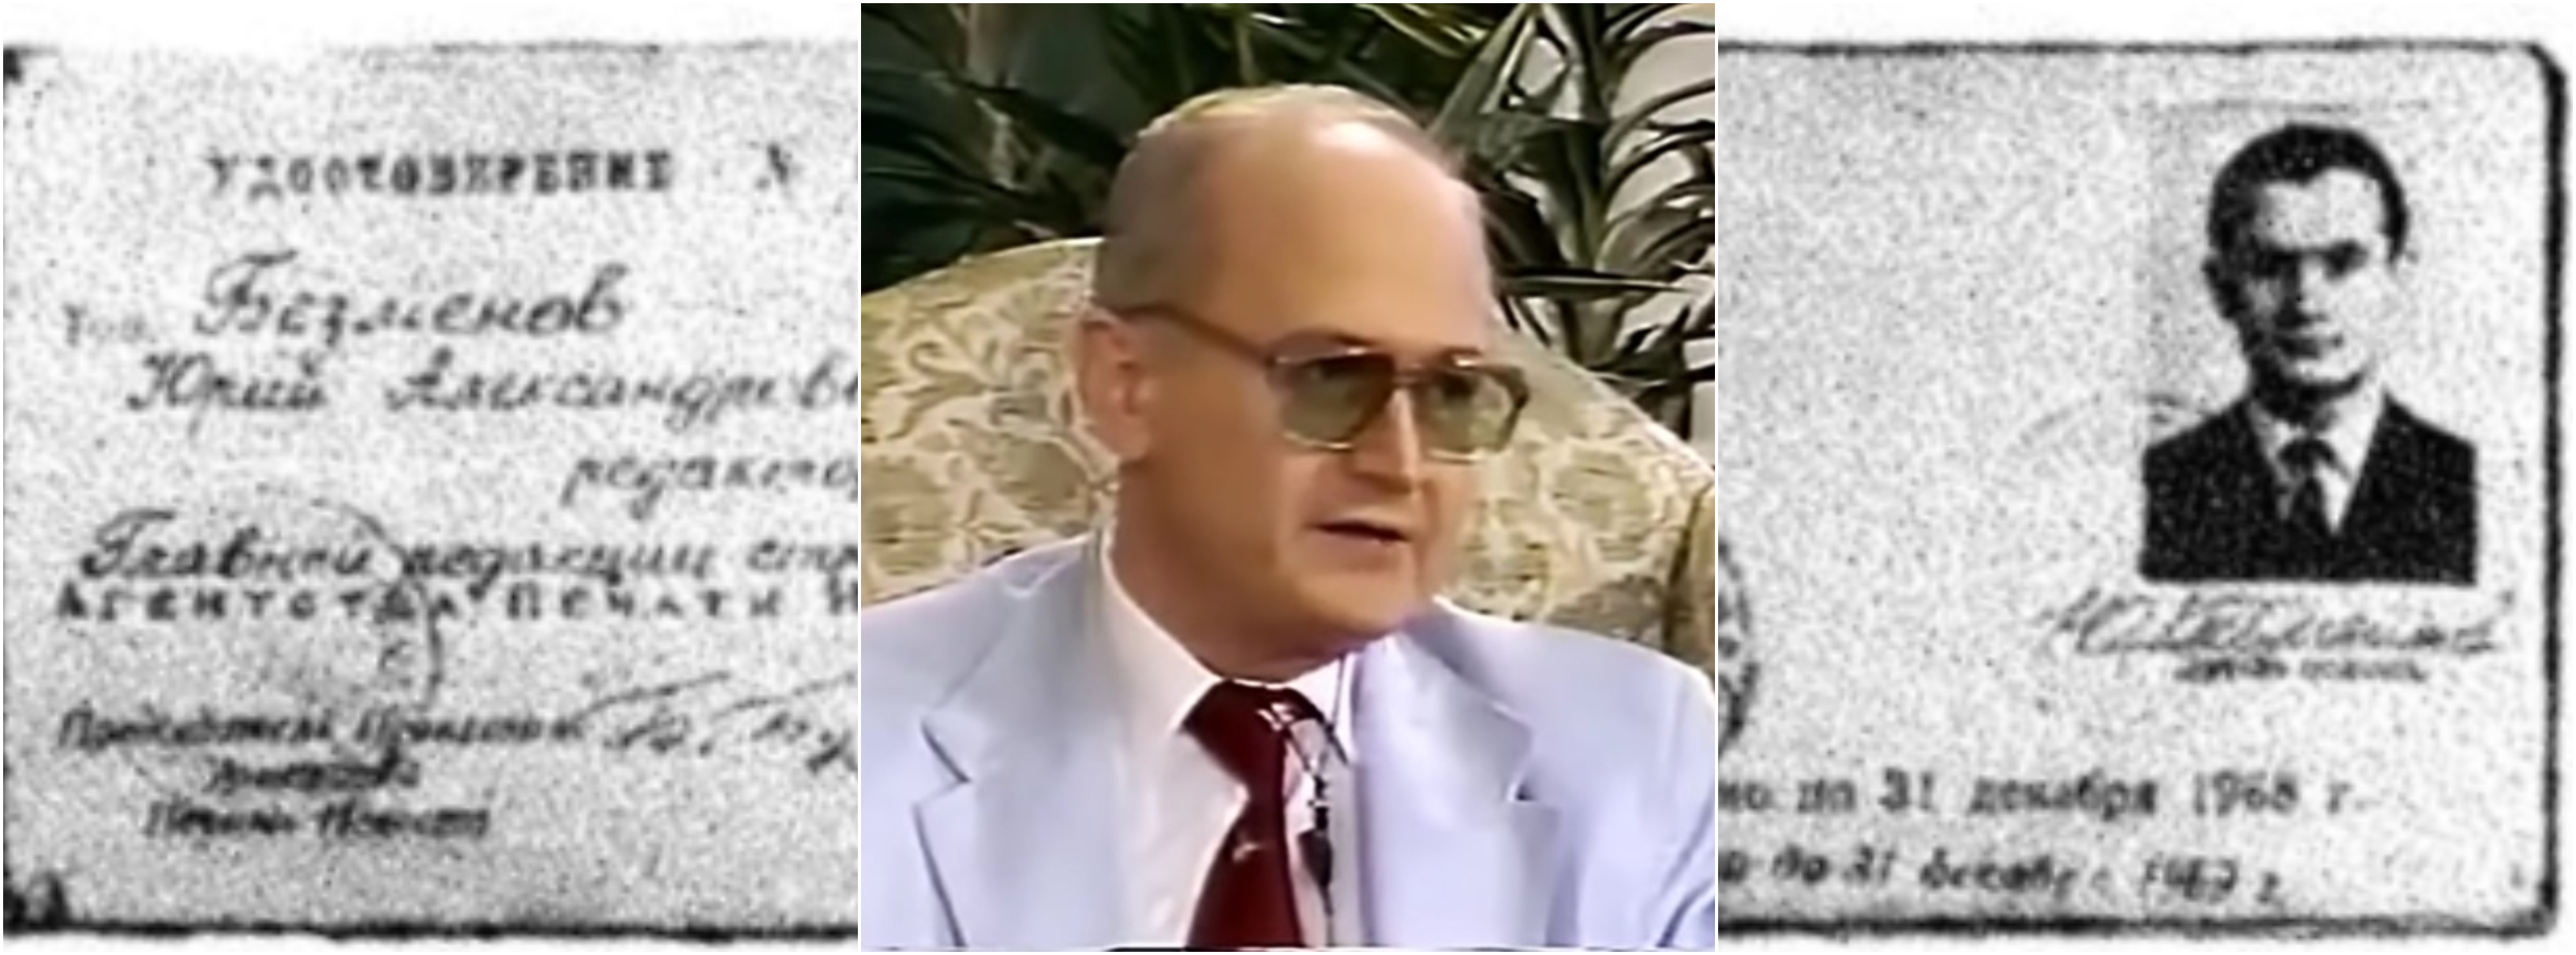 Bývalý agent ruské tajné služby (KGB) Yuri Bezmenov. (Reprofoto)